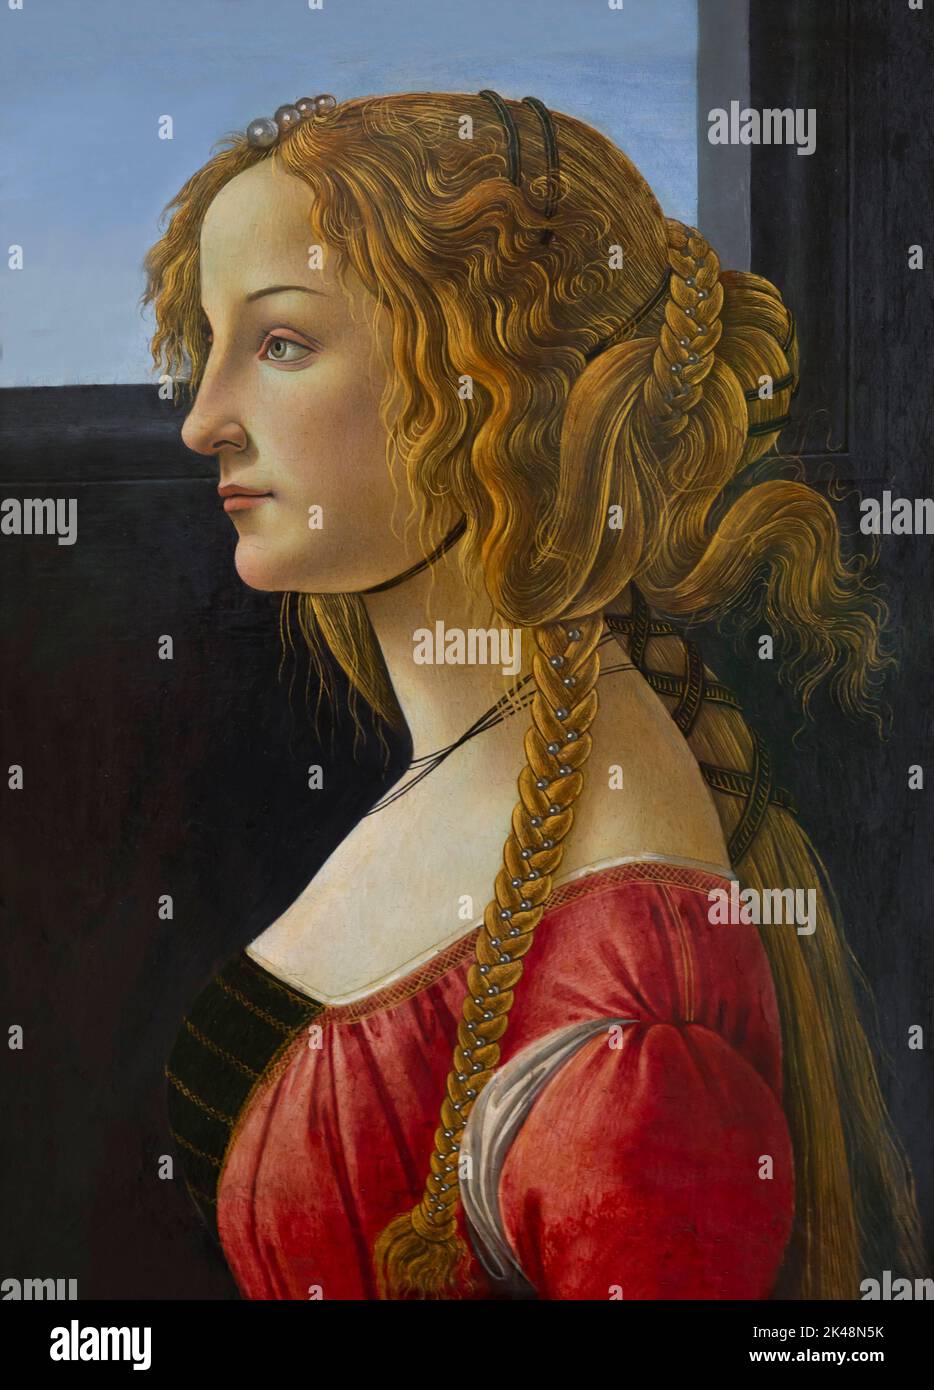 Retrato de una joven, Sandro Botticelli, alrededor de 1460-1465, Gemaldegalerie, Berlín, Alemania, Europa Foto de stock